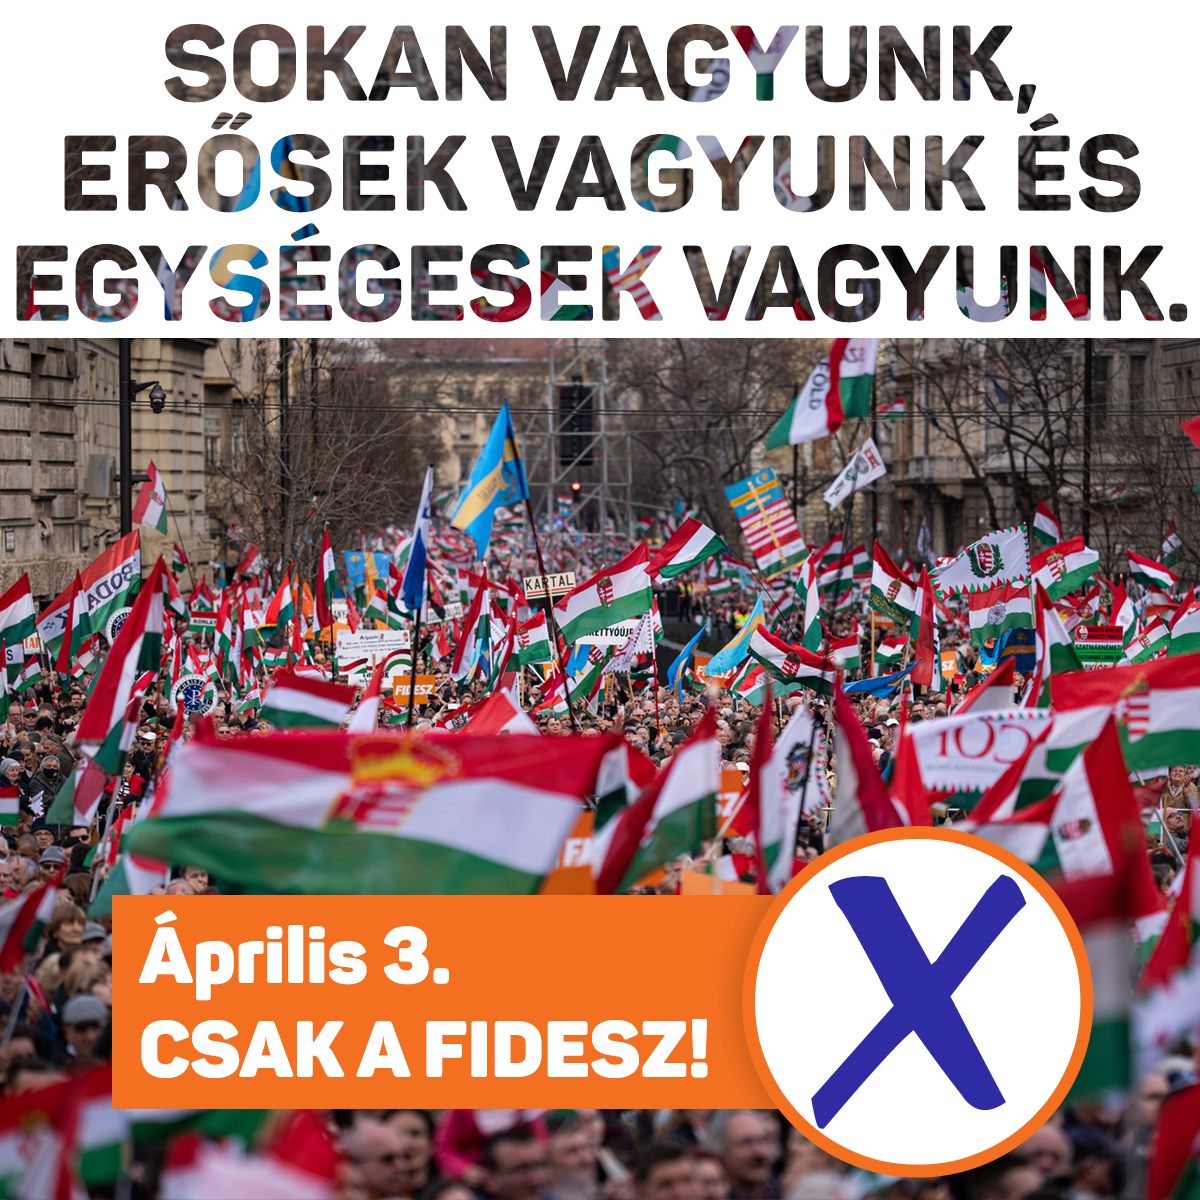 Együtt erő vagyunk! Április 3-án szavazz! Csak a Fidesz!